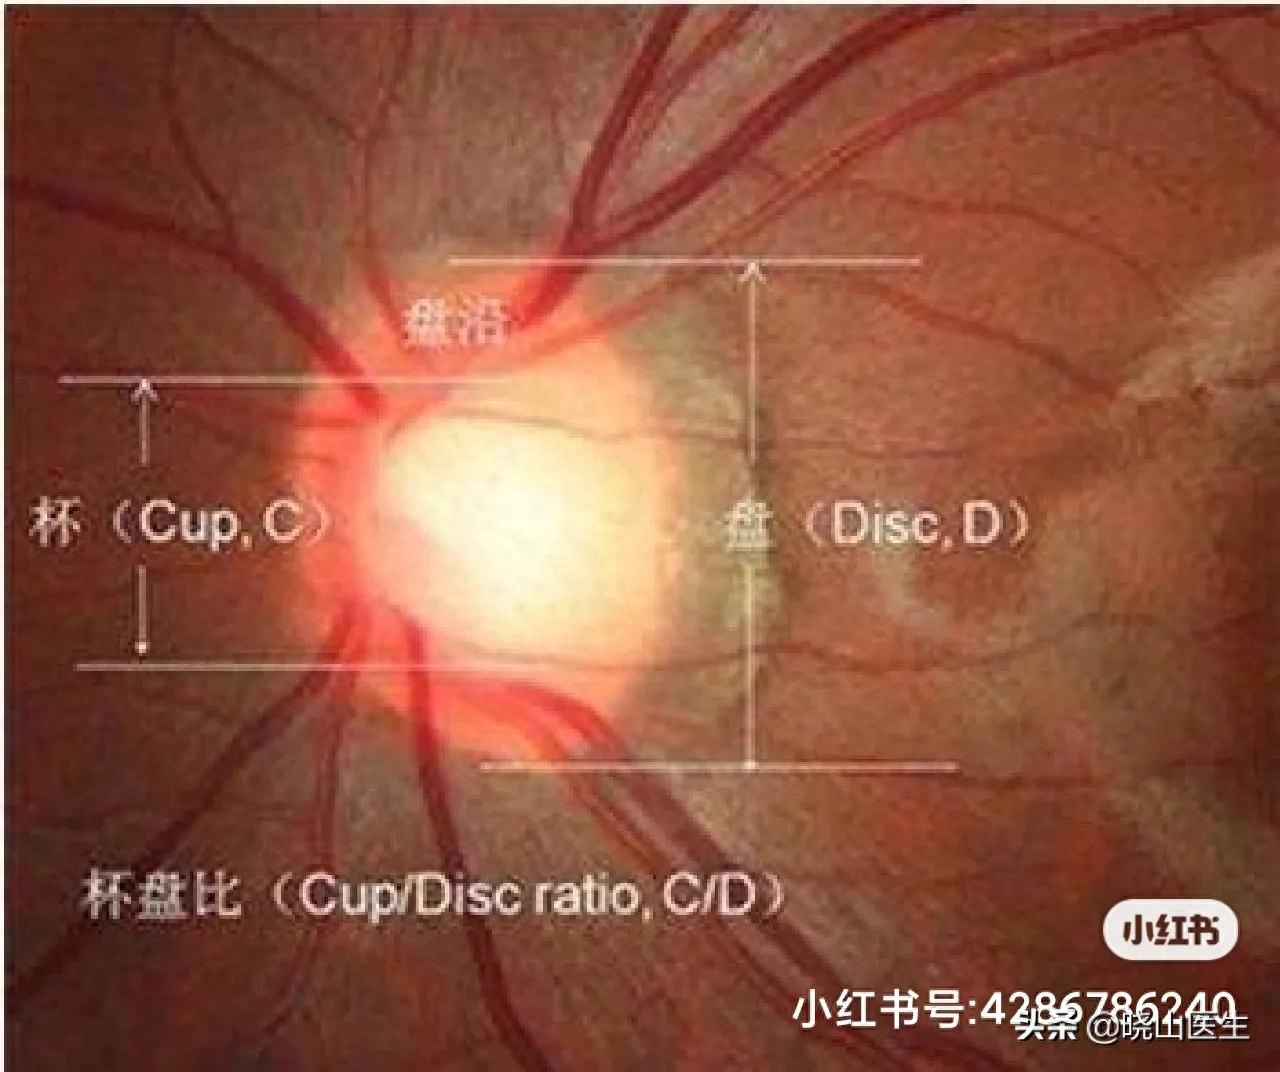 了解青光眼: Eye Tech Care